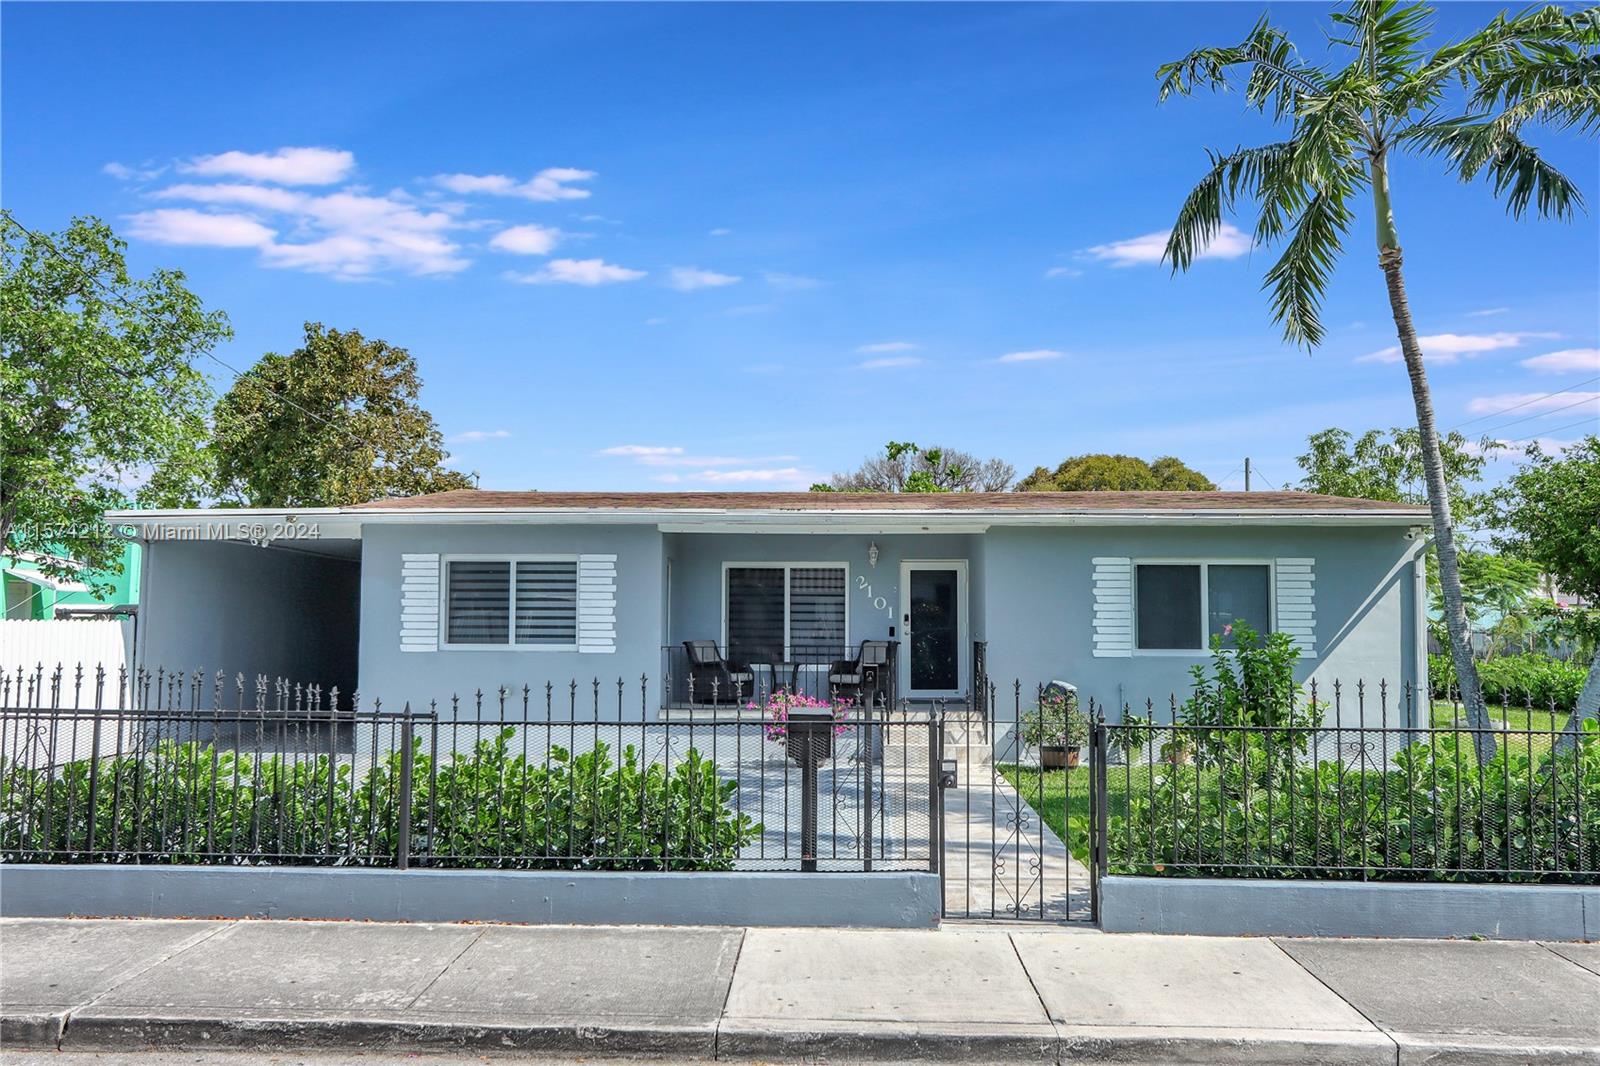 Rental Property at 2101 Nw 26th St, Miami, Broward County, Florida -  - $1,150,000 MO.